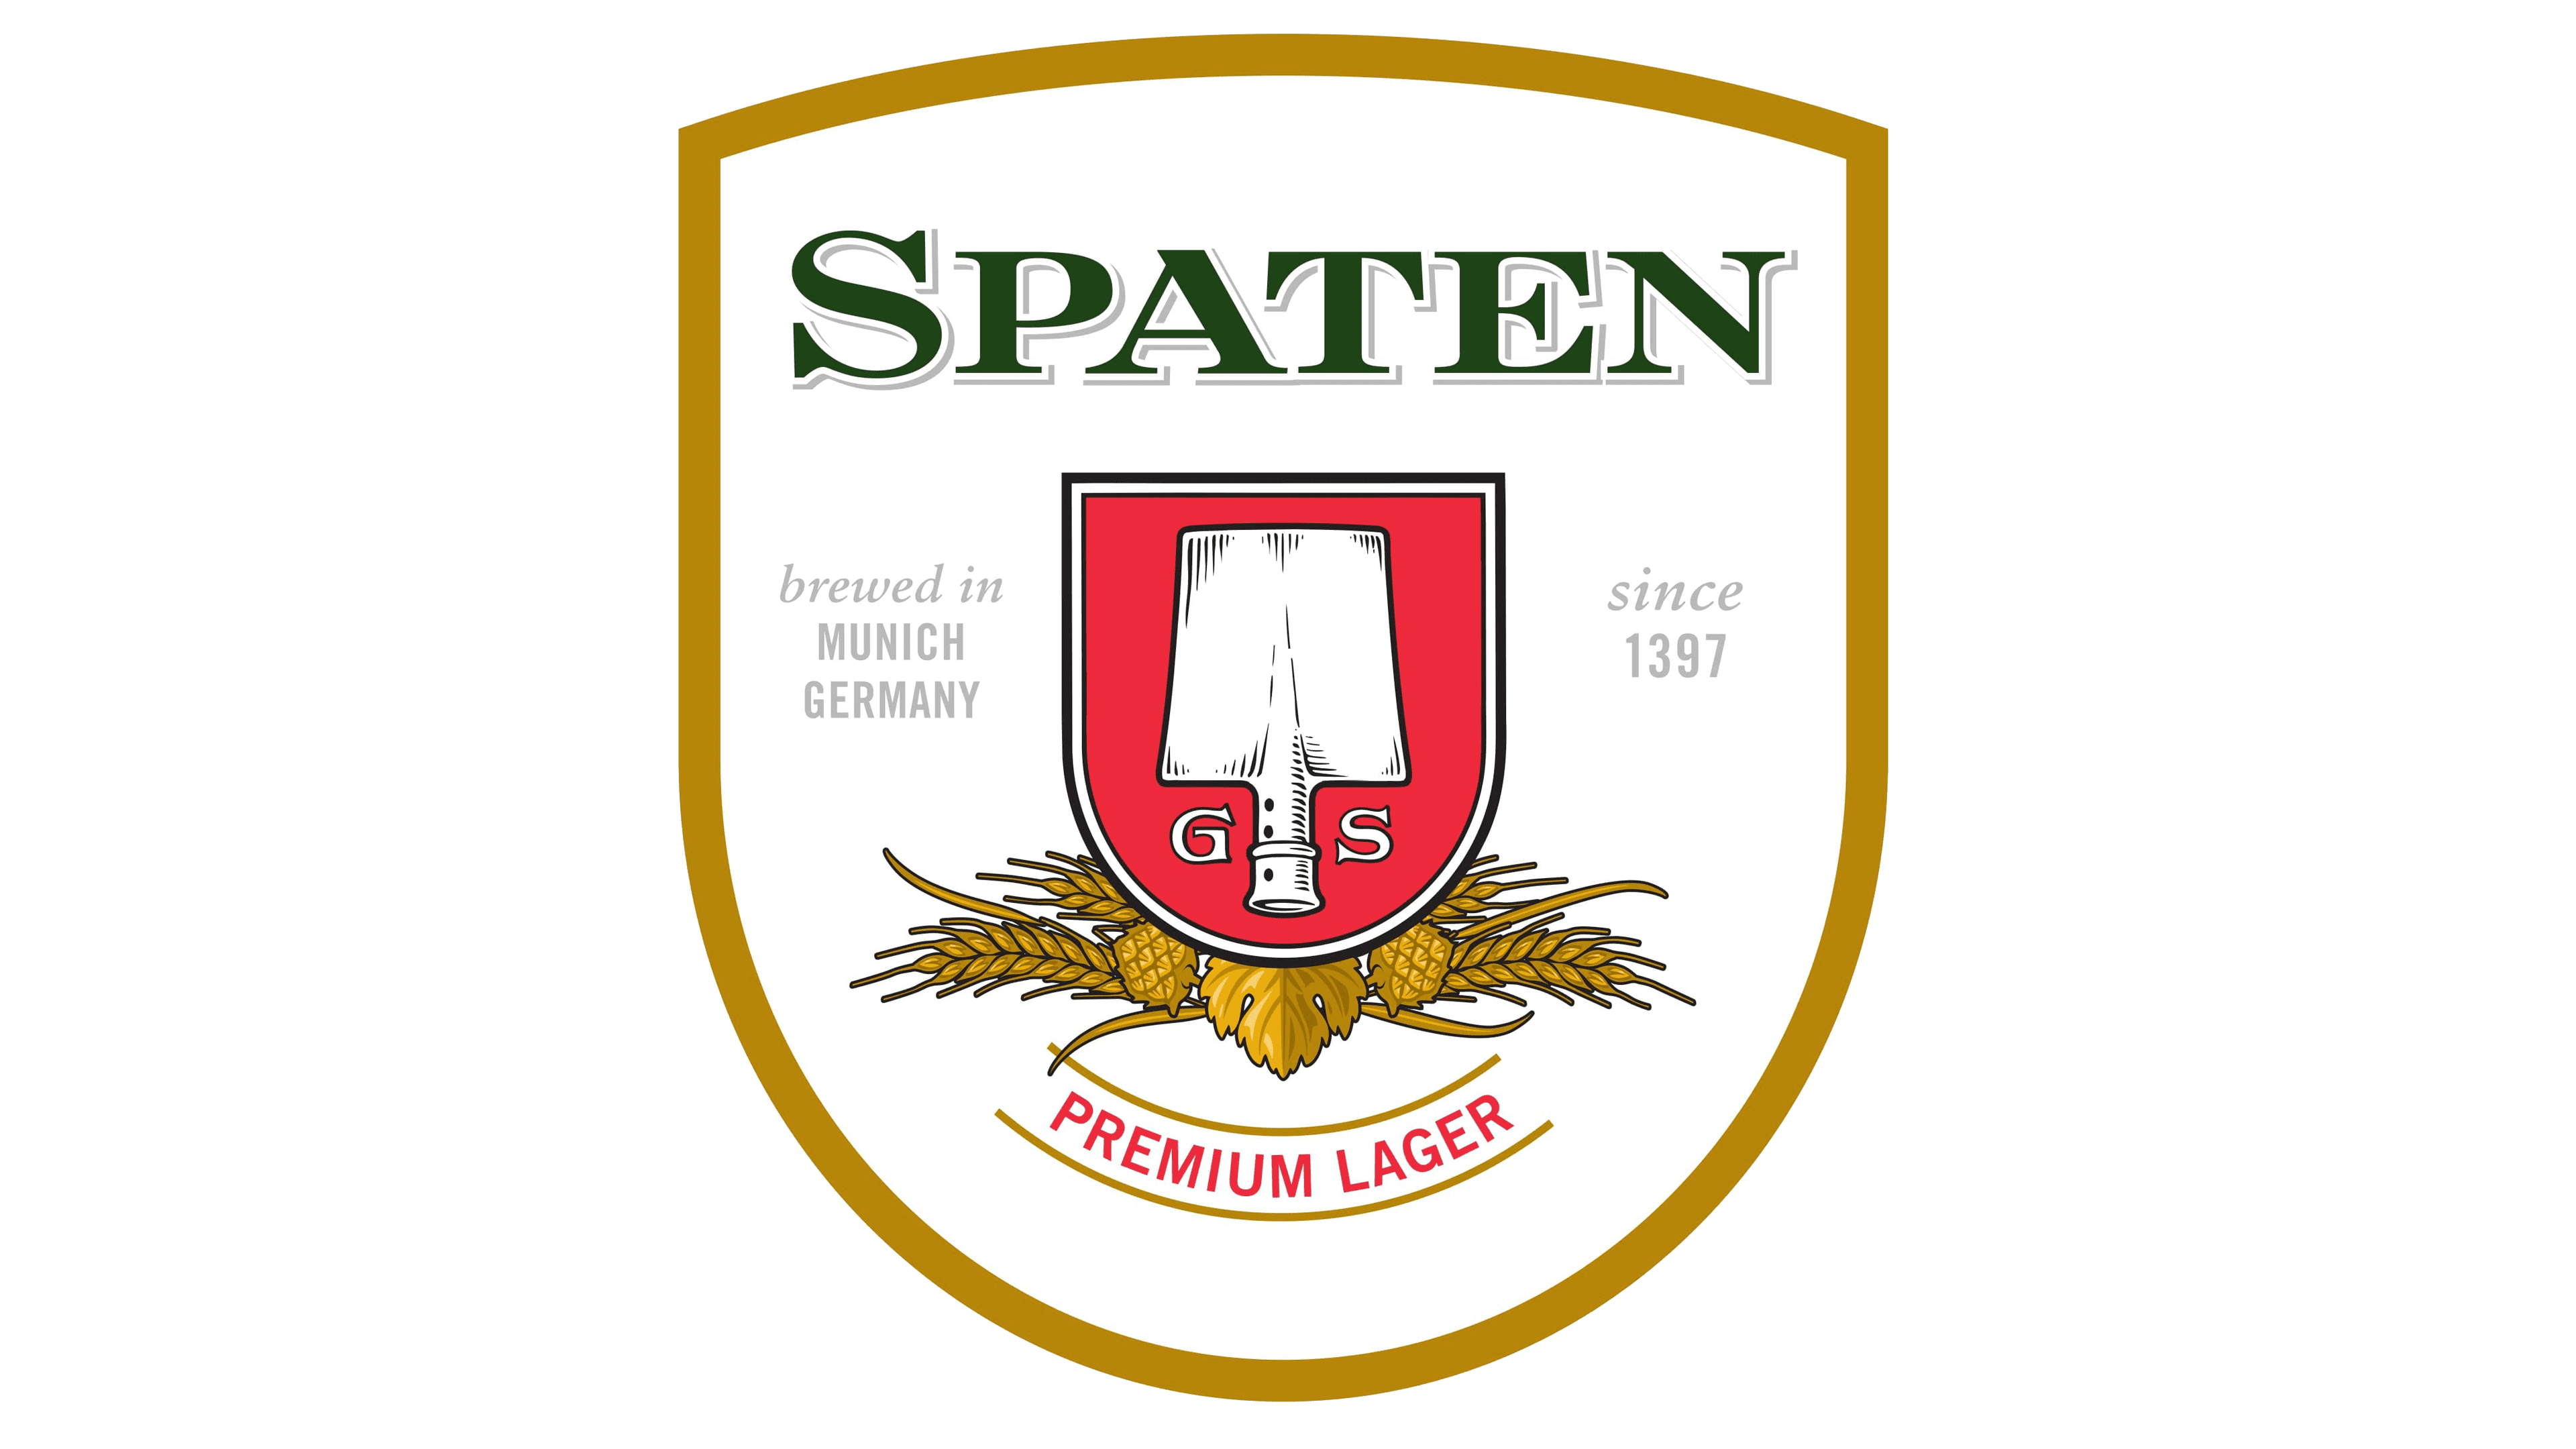 Logotipo de Spaten Logo